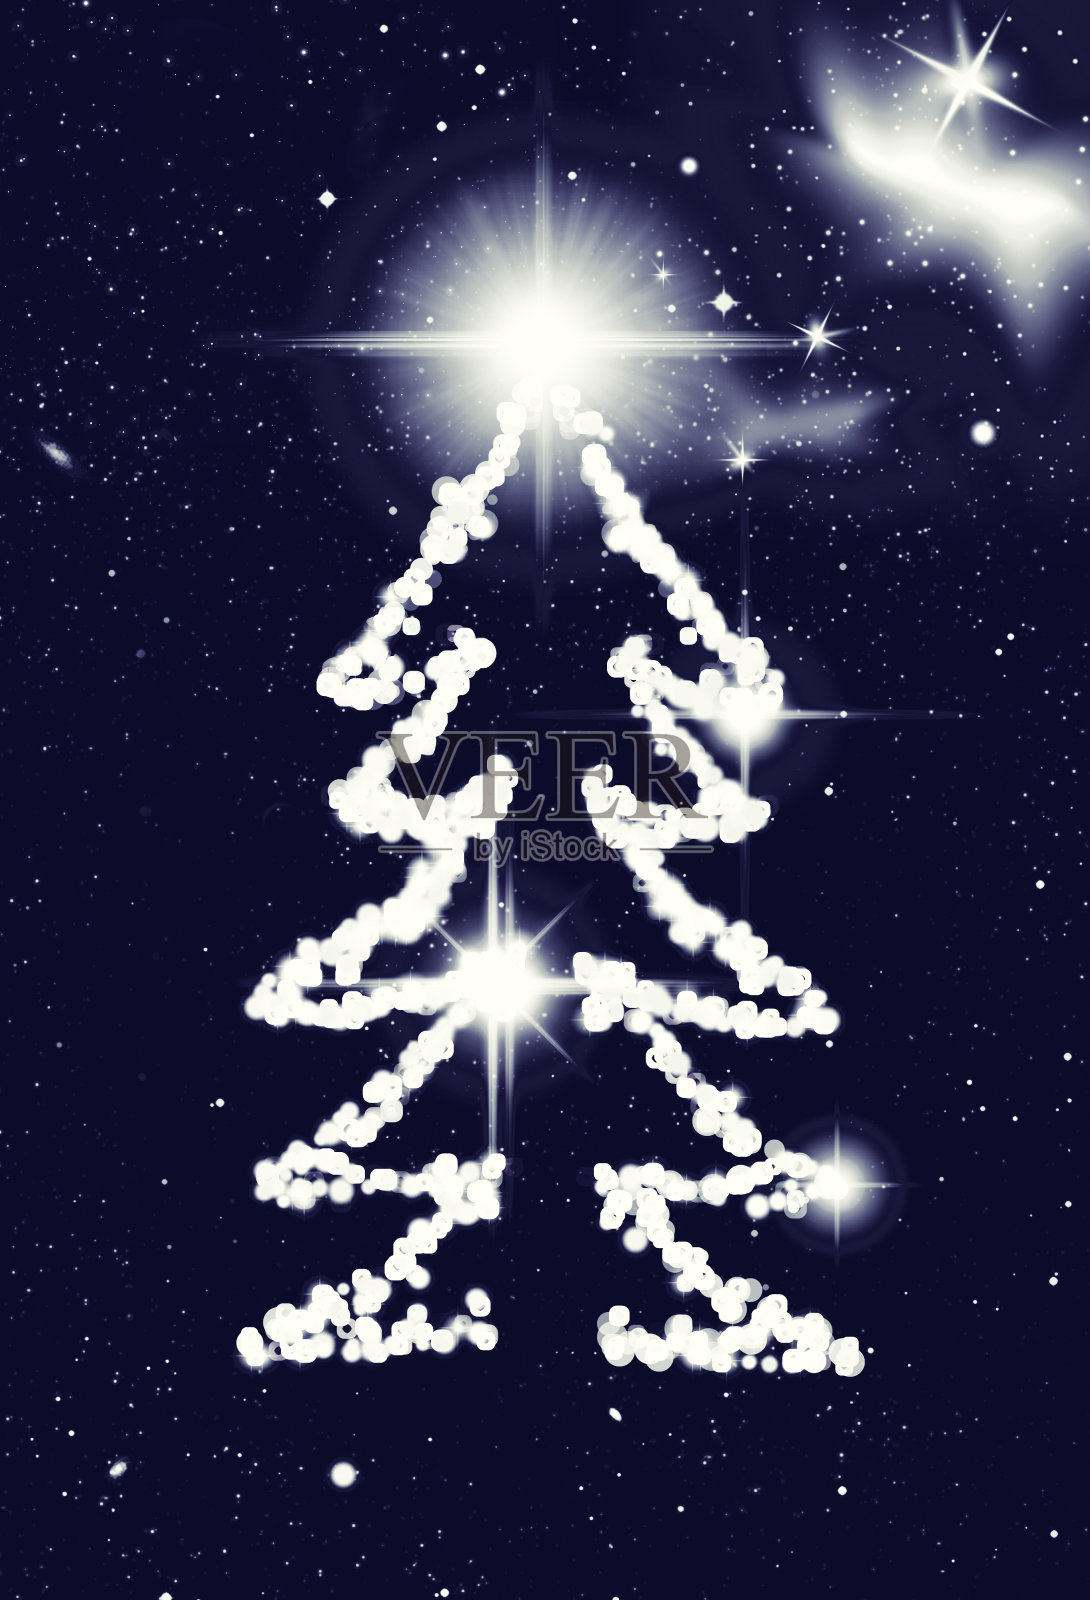 由星星组成的新年树。夜空繁星点点。圣诞节和新年的概念照片摄影图片